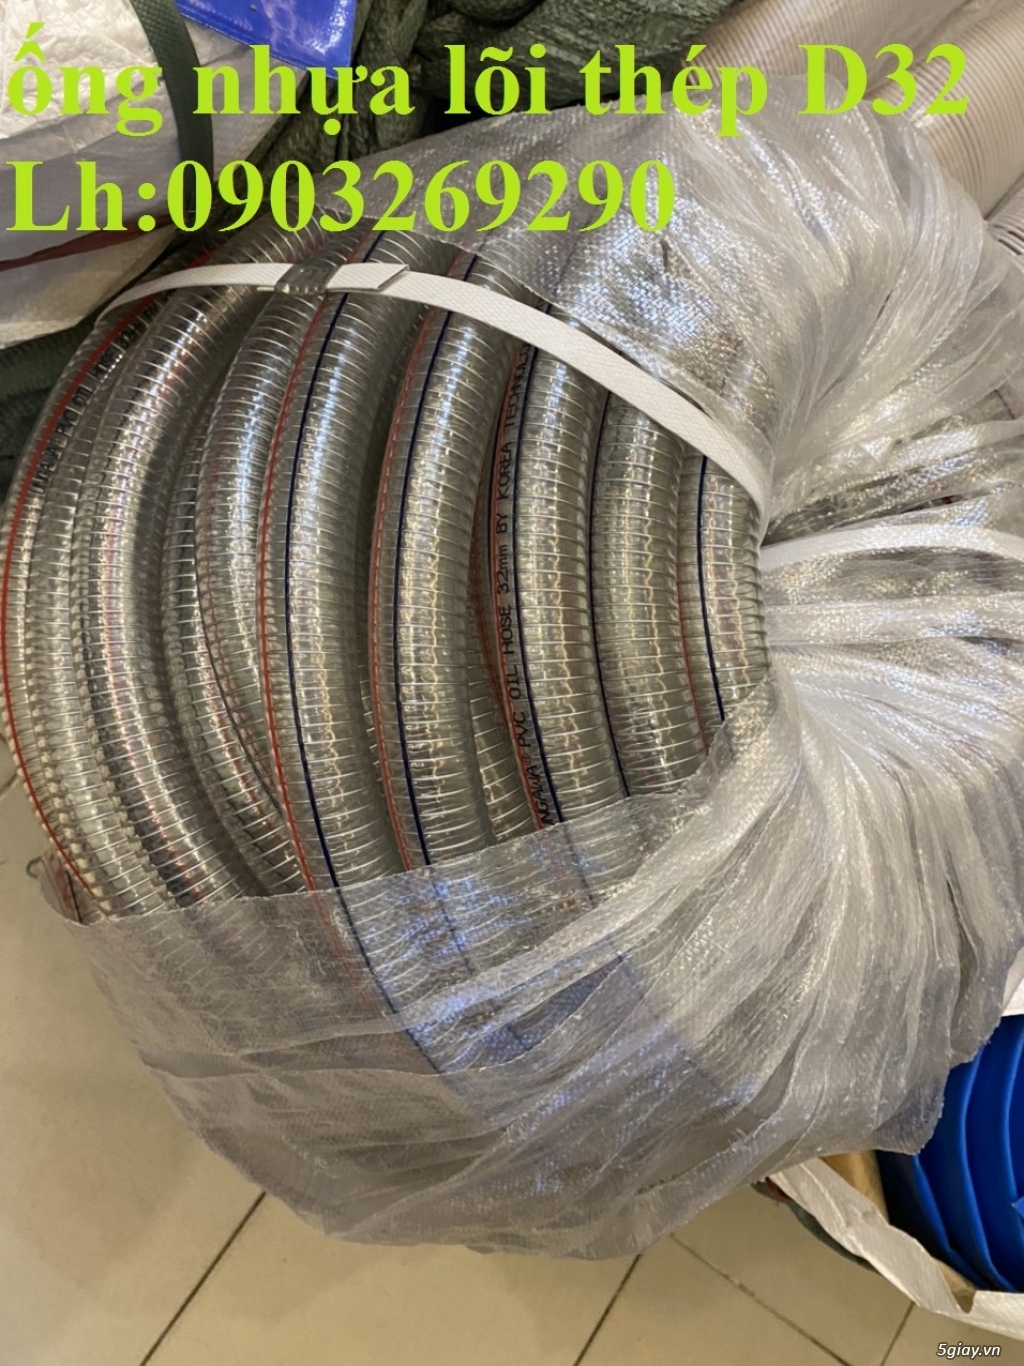 Cung cấp ống công nghiệp - ống hút bụi - khí - nhiệt D100 - D114- D120 - 29